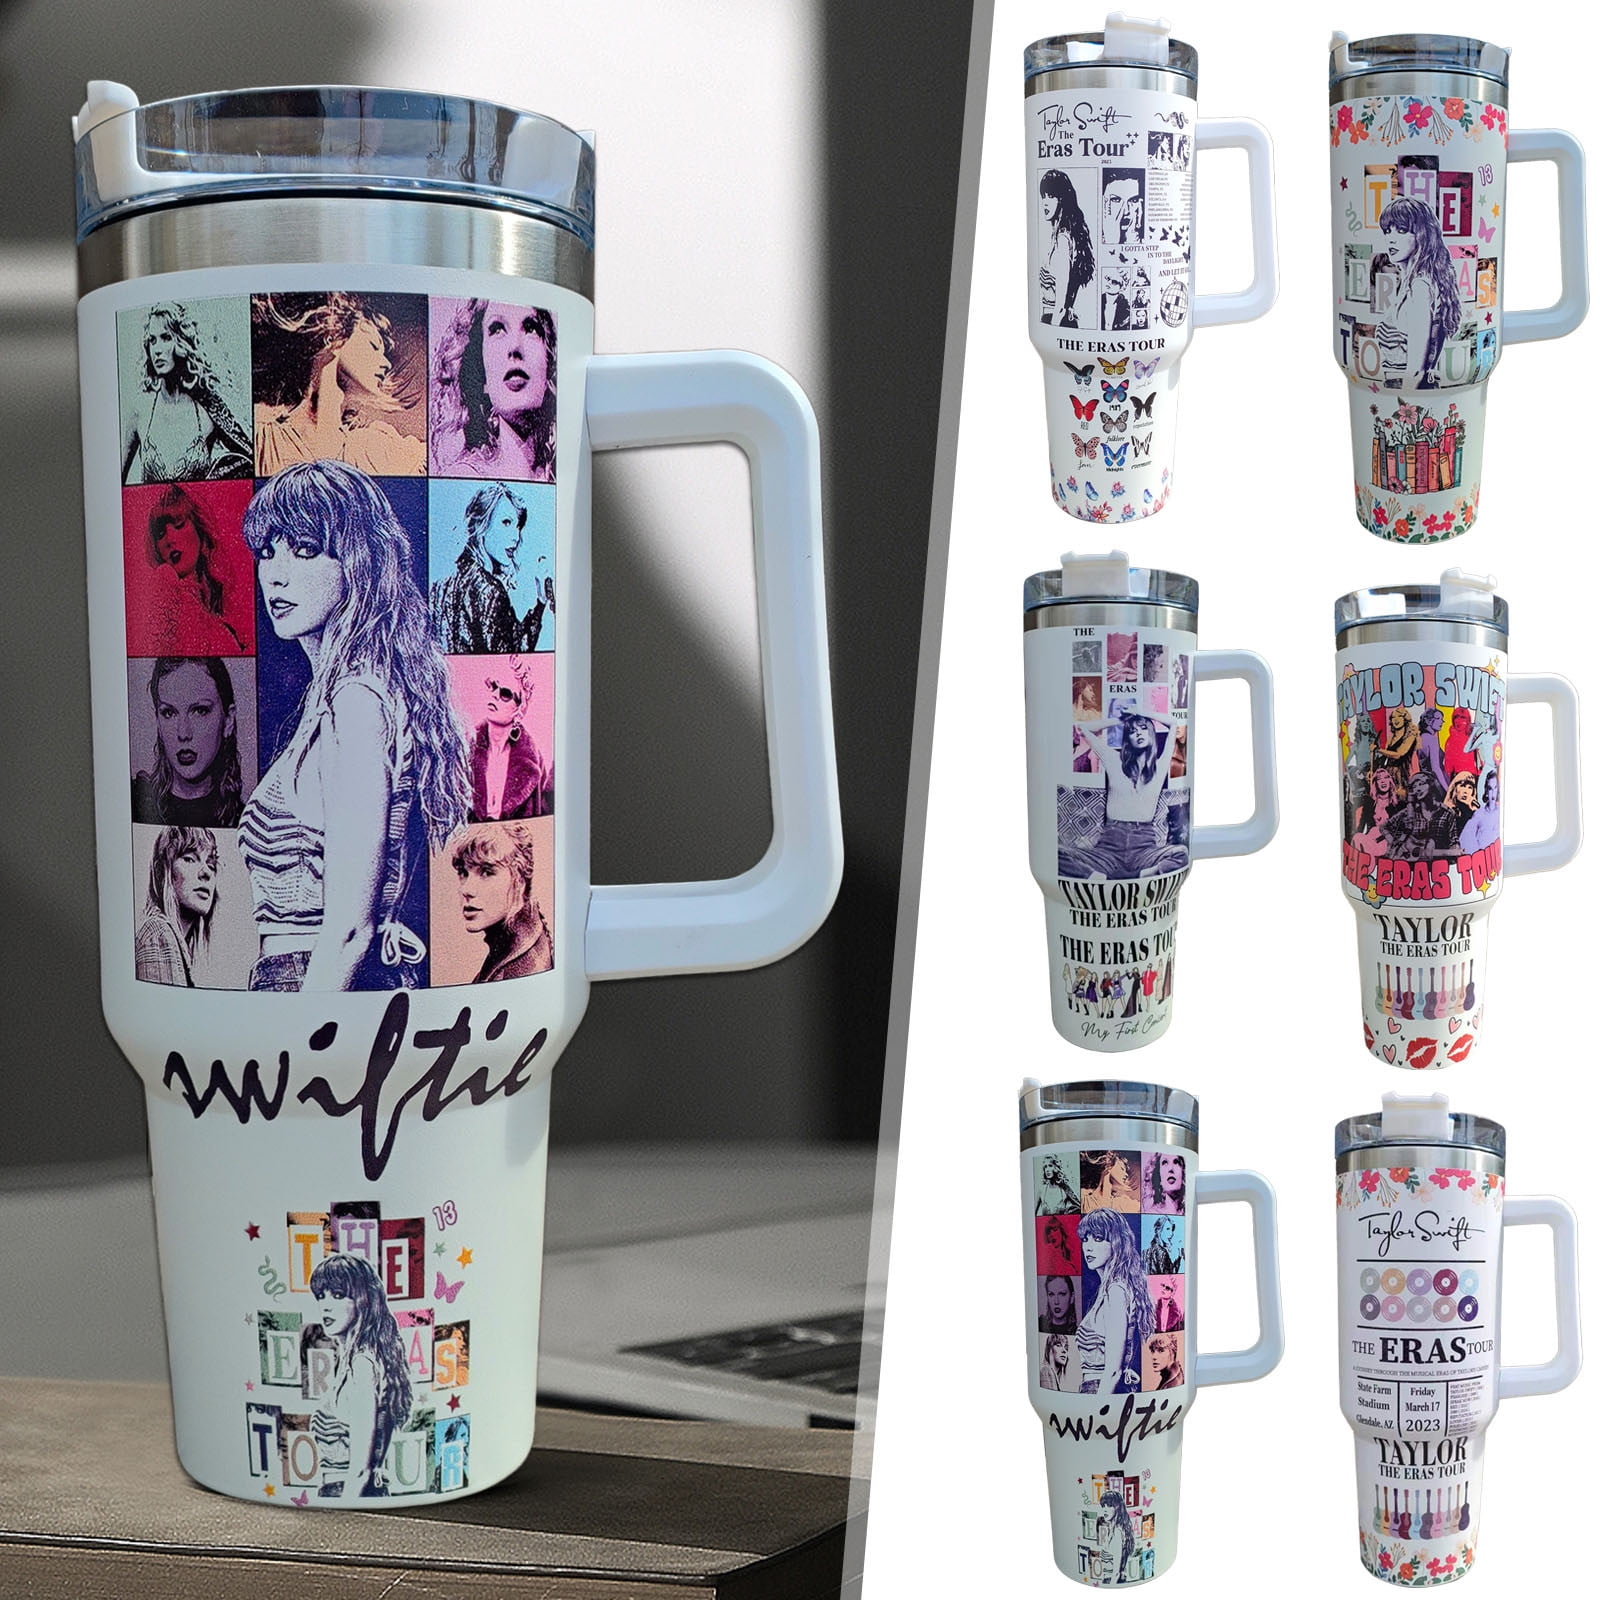 Swiftie Cup - Cups Taylor Swift For Fan Gifts - Taylor Swift Mug - Sin